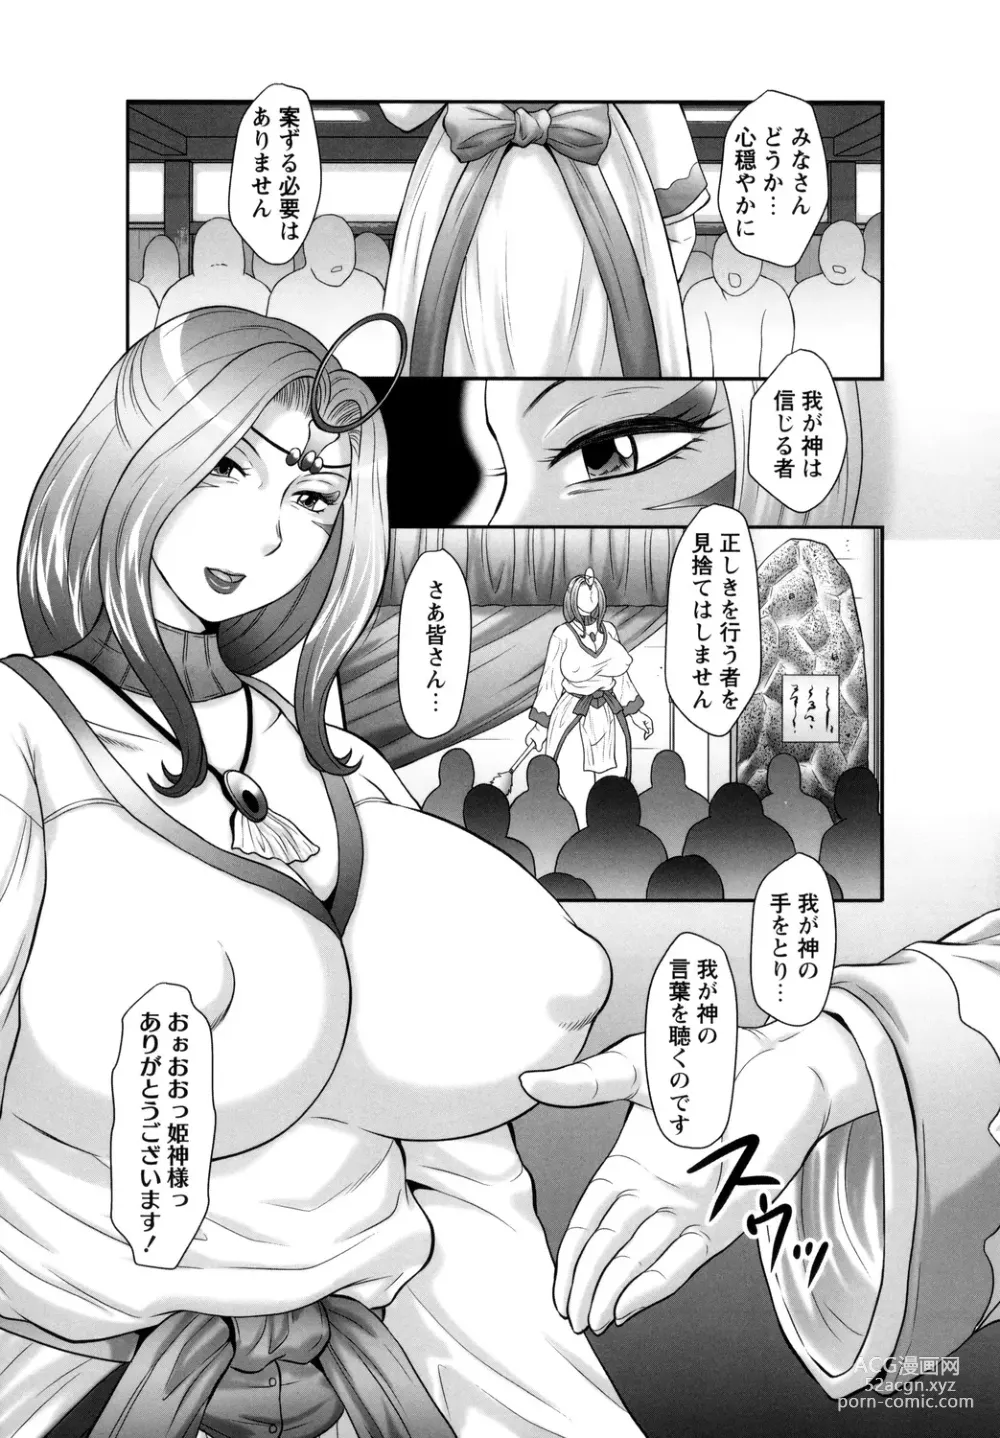 Page 7 of manga Midaragami Seinaru Jukujo ga Mesubuta Ika no Nanika ni Ochiru made